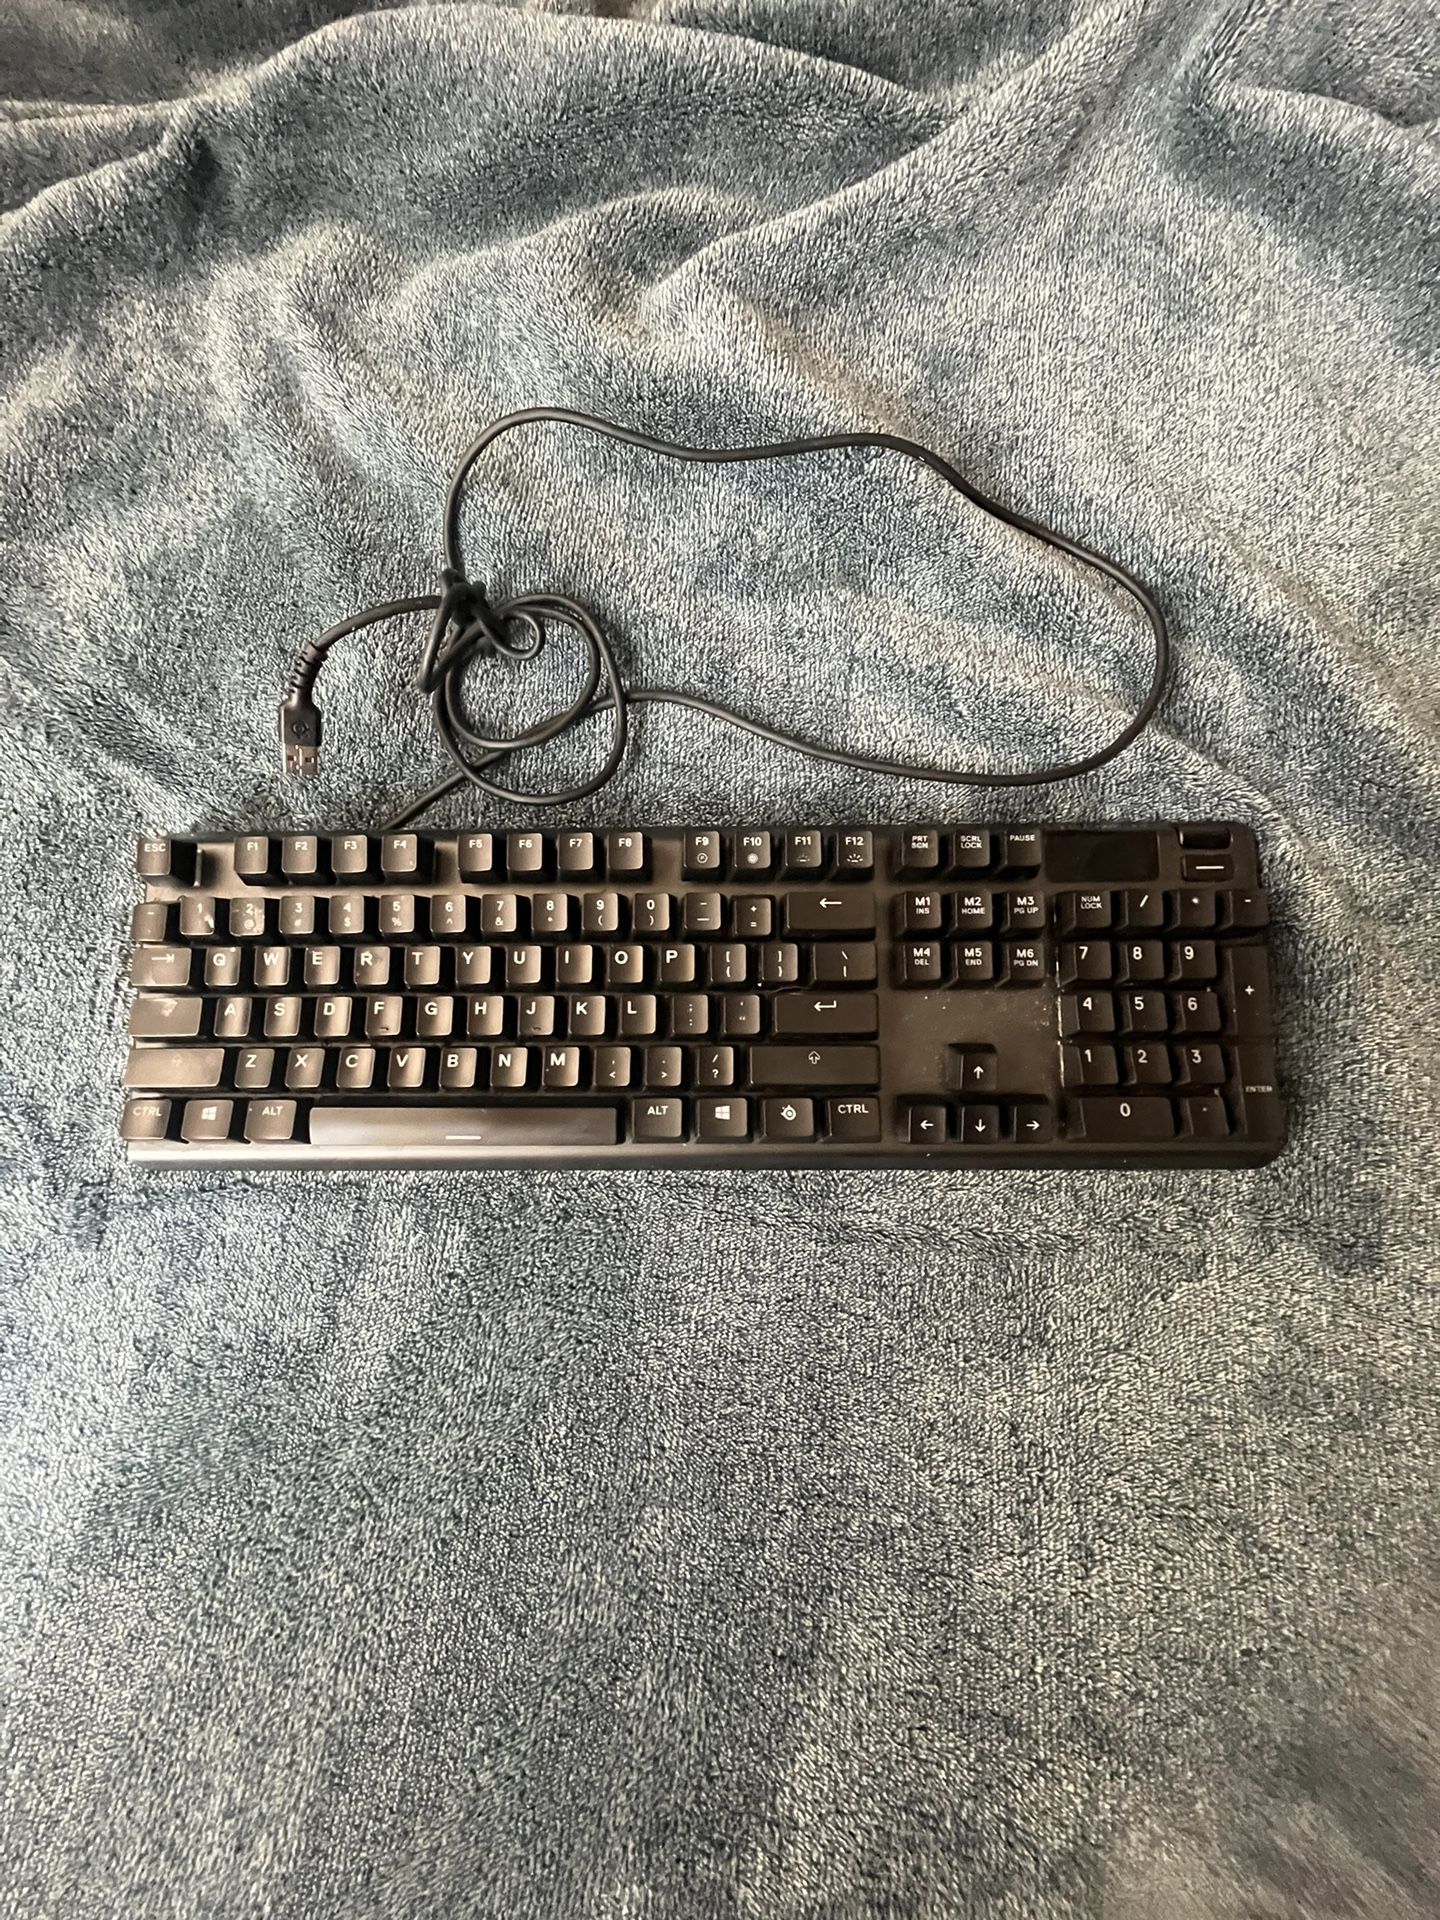 Steel Series Apex 5 keyboard